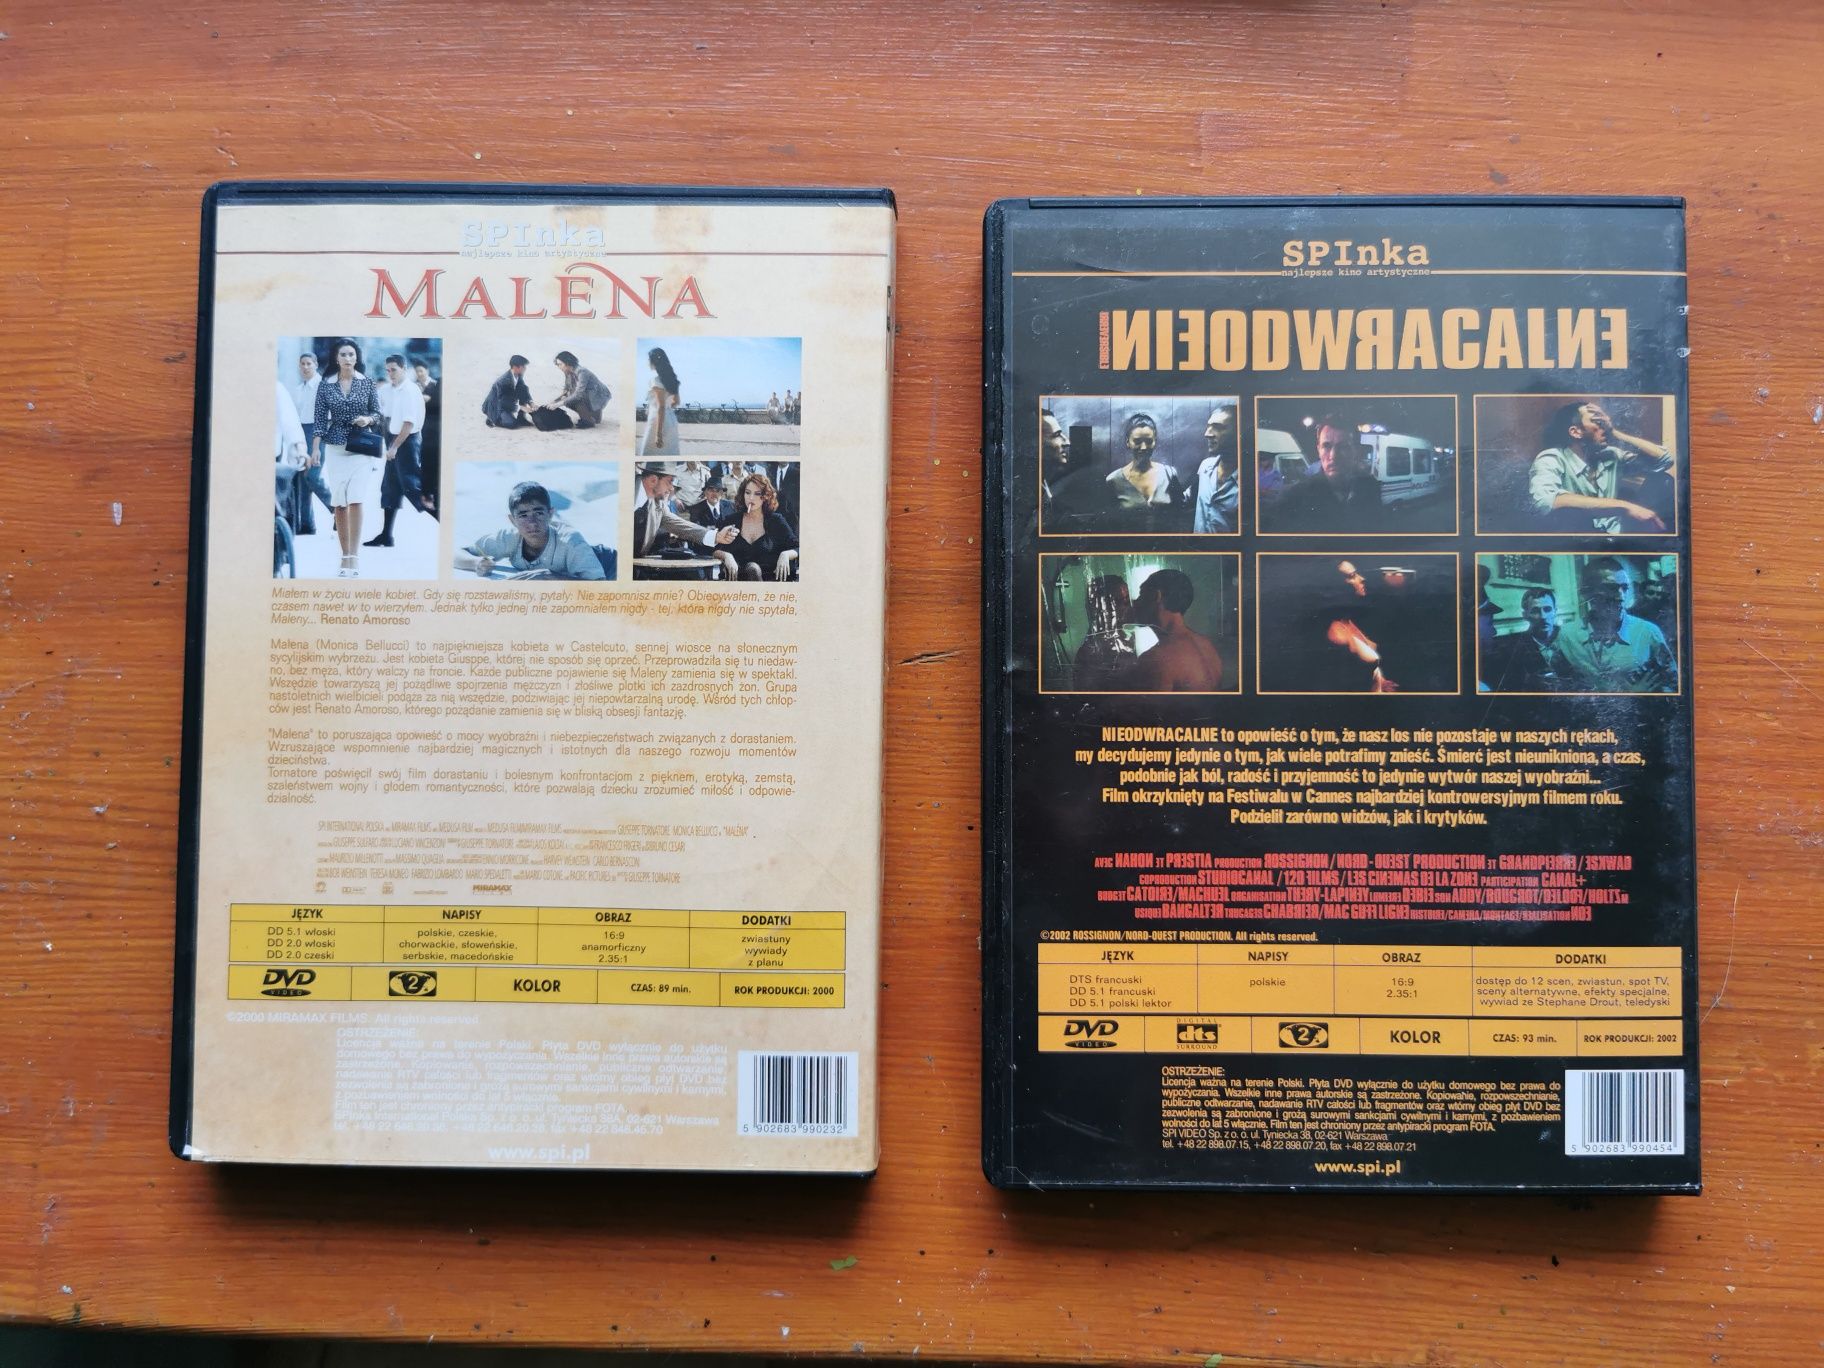 2 filmy DVD z Monicą Belucci: "Malena" i "Nieodwracalne"